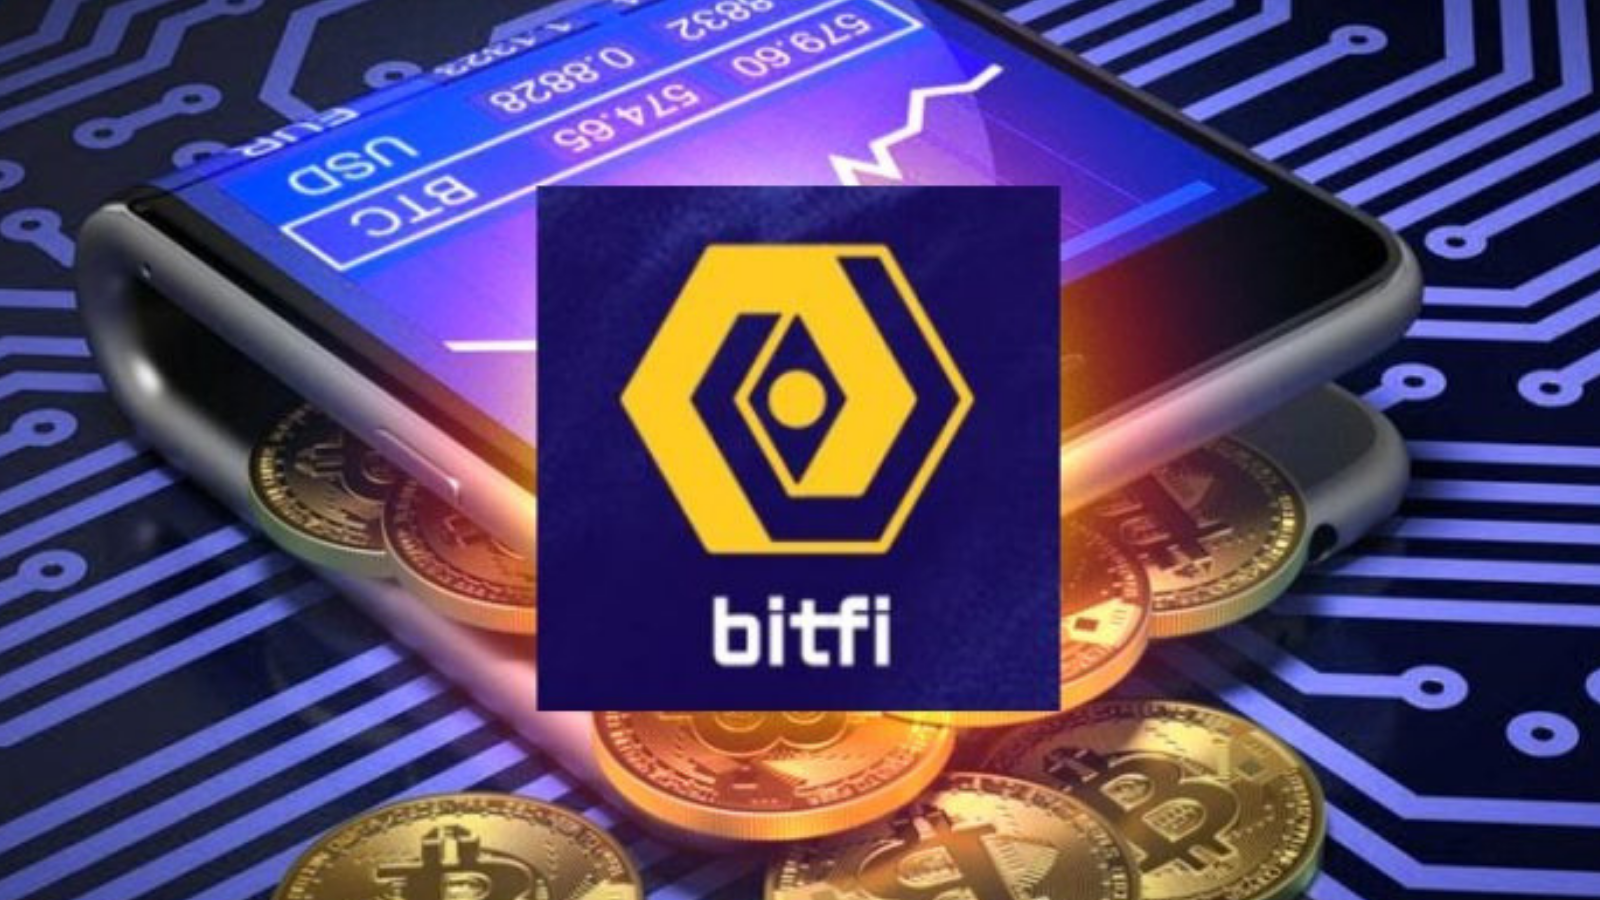 BitFi: Unleashing DeFi on the Bitcoin Network
